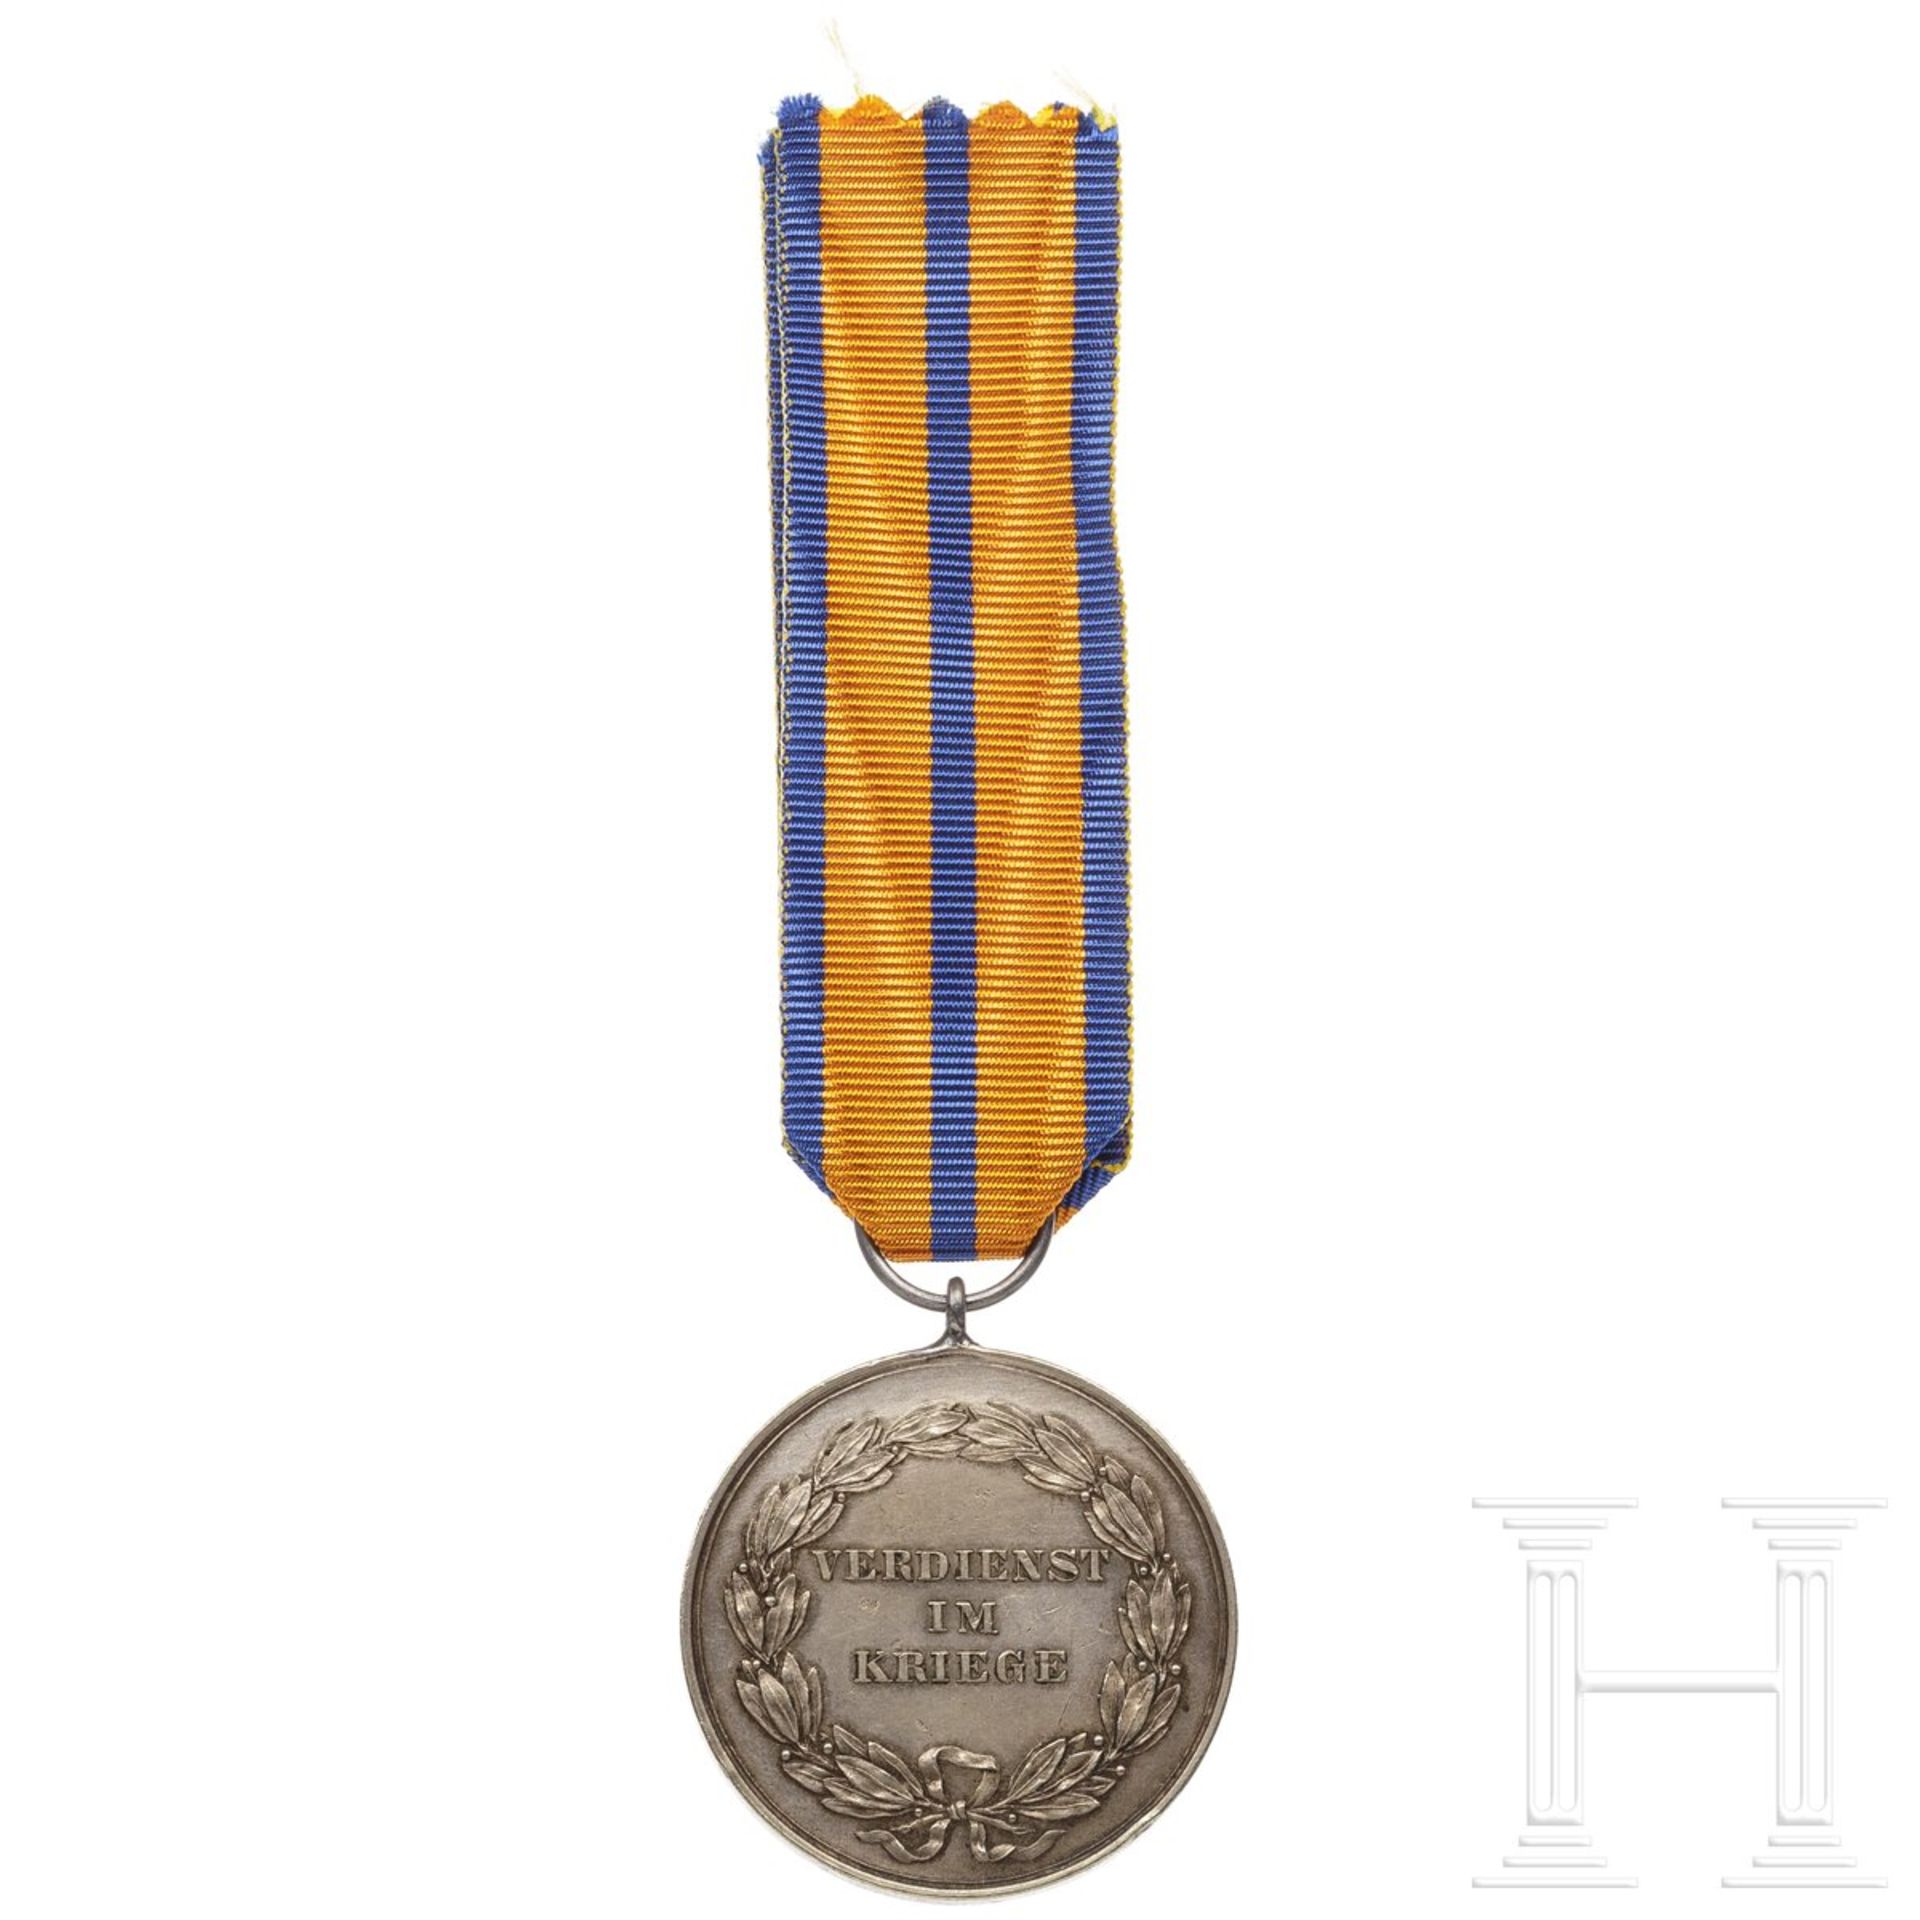 Schwarzburg-Rudolstadt - Silberne Medaille für Verdienst im Kriege 1914 - Image 2 of 3